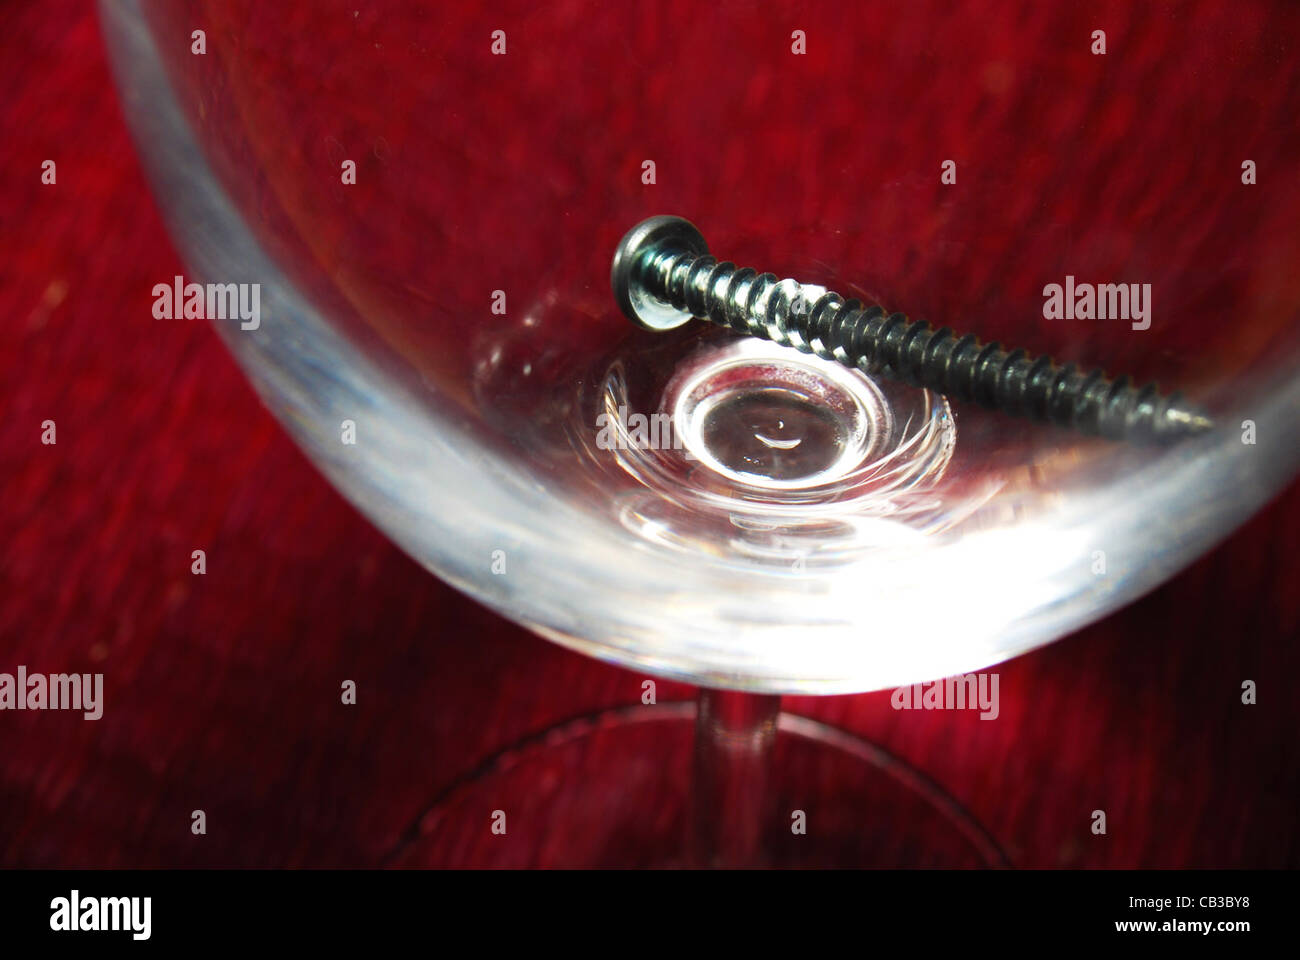 La vite in un bicchiere di vino sulla parte superiore di un posto rosso mat Foto Stock